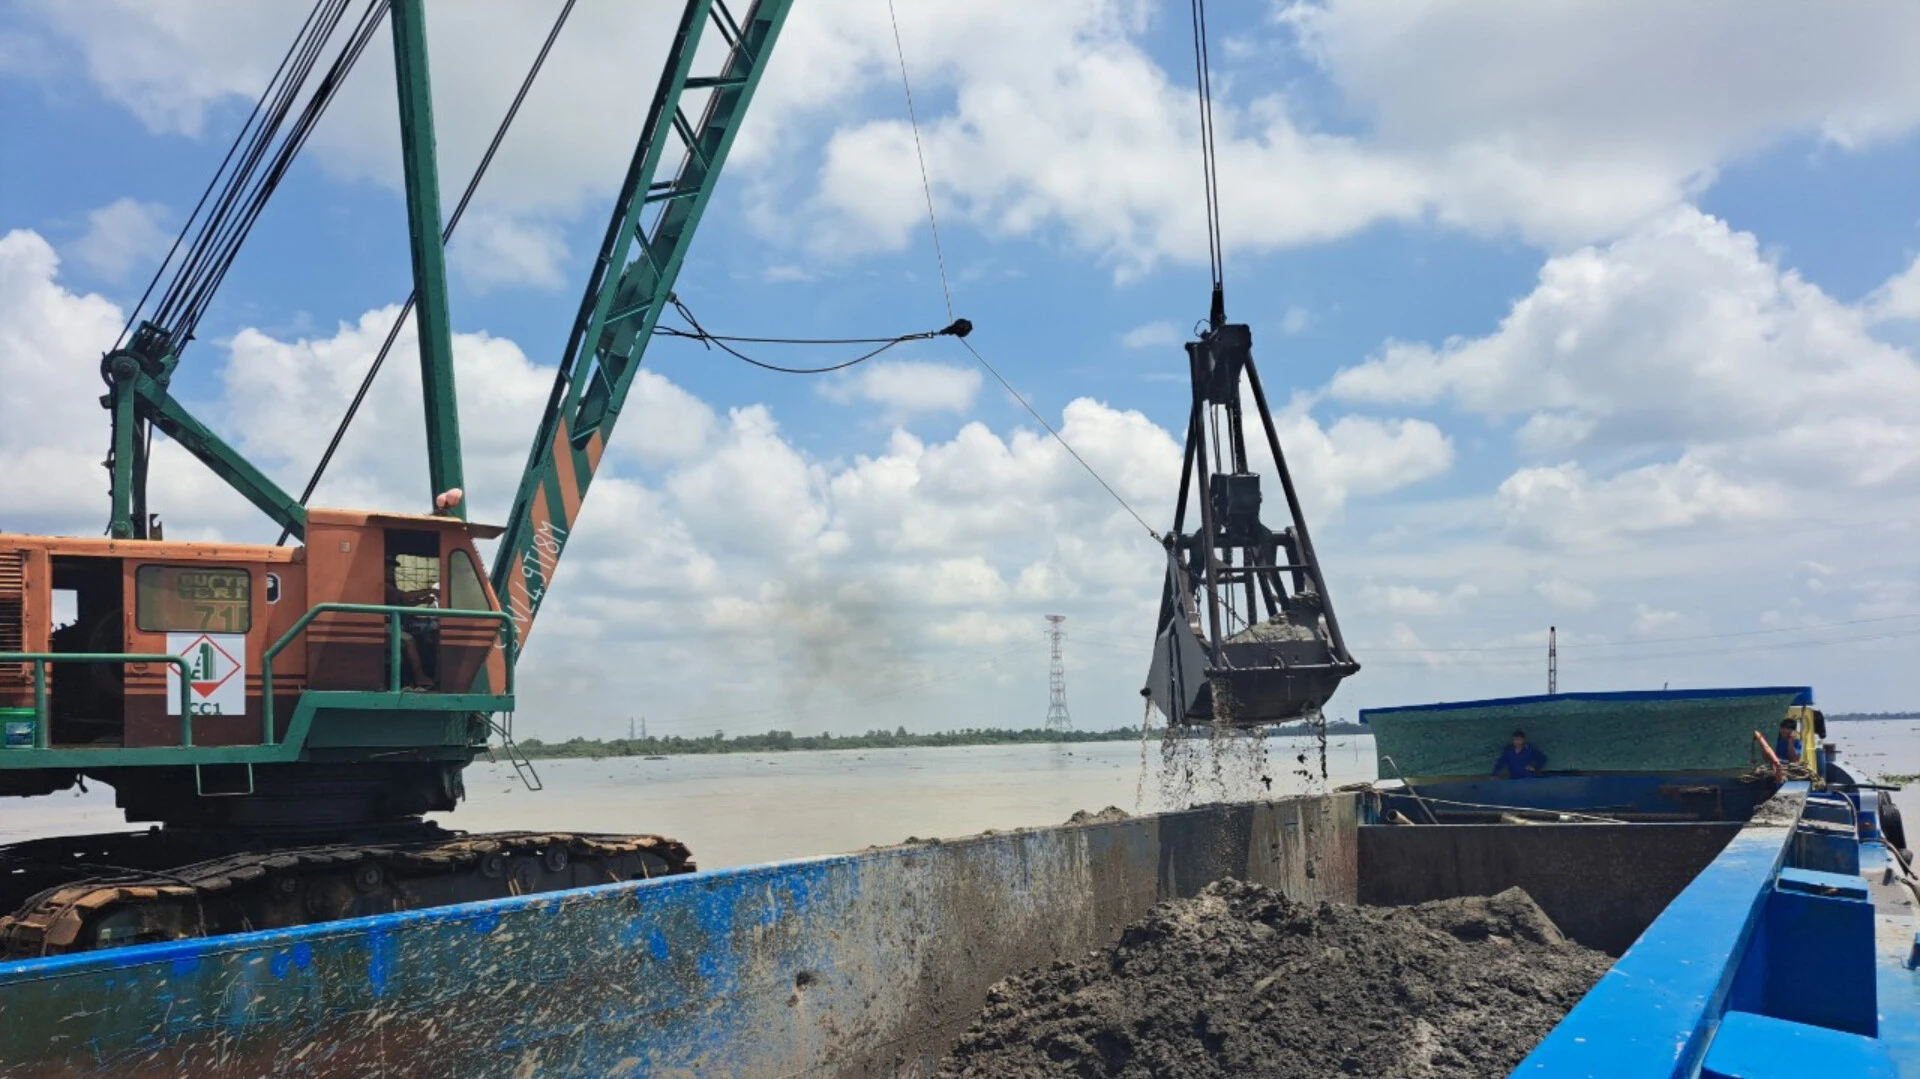 Một công ty ở Đồng Tháp được duyệt thẩm định khai thác hơn 1,7 triệu m3 cát trên sông Tiền - Ảnh 1.